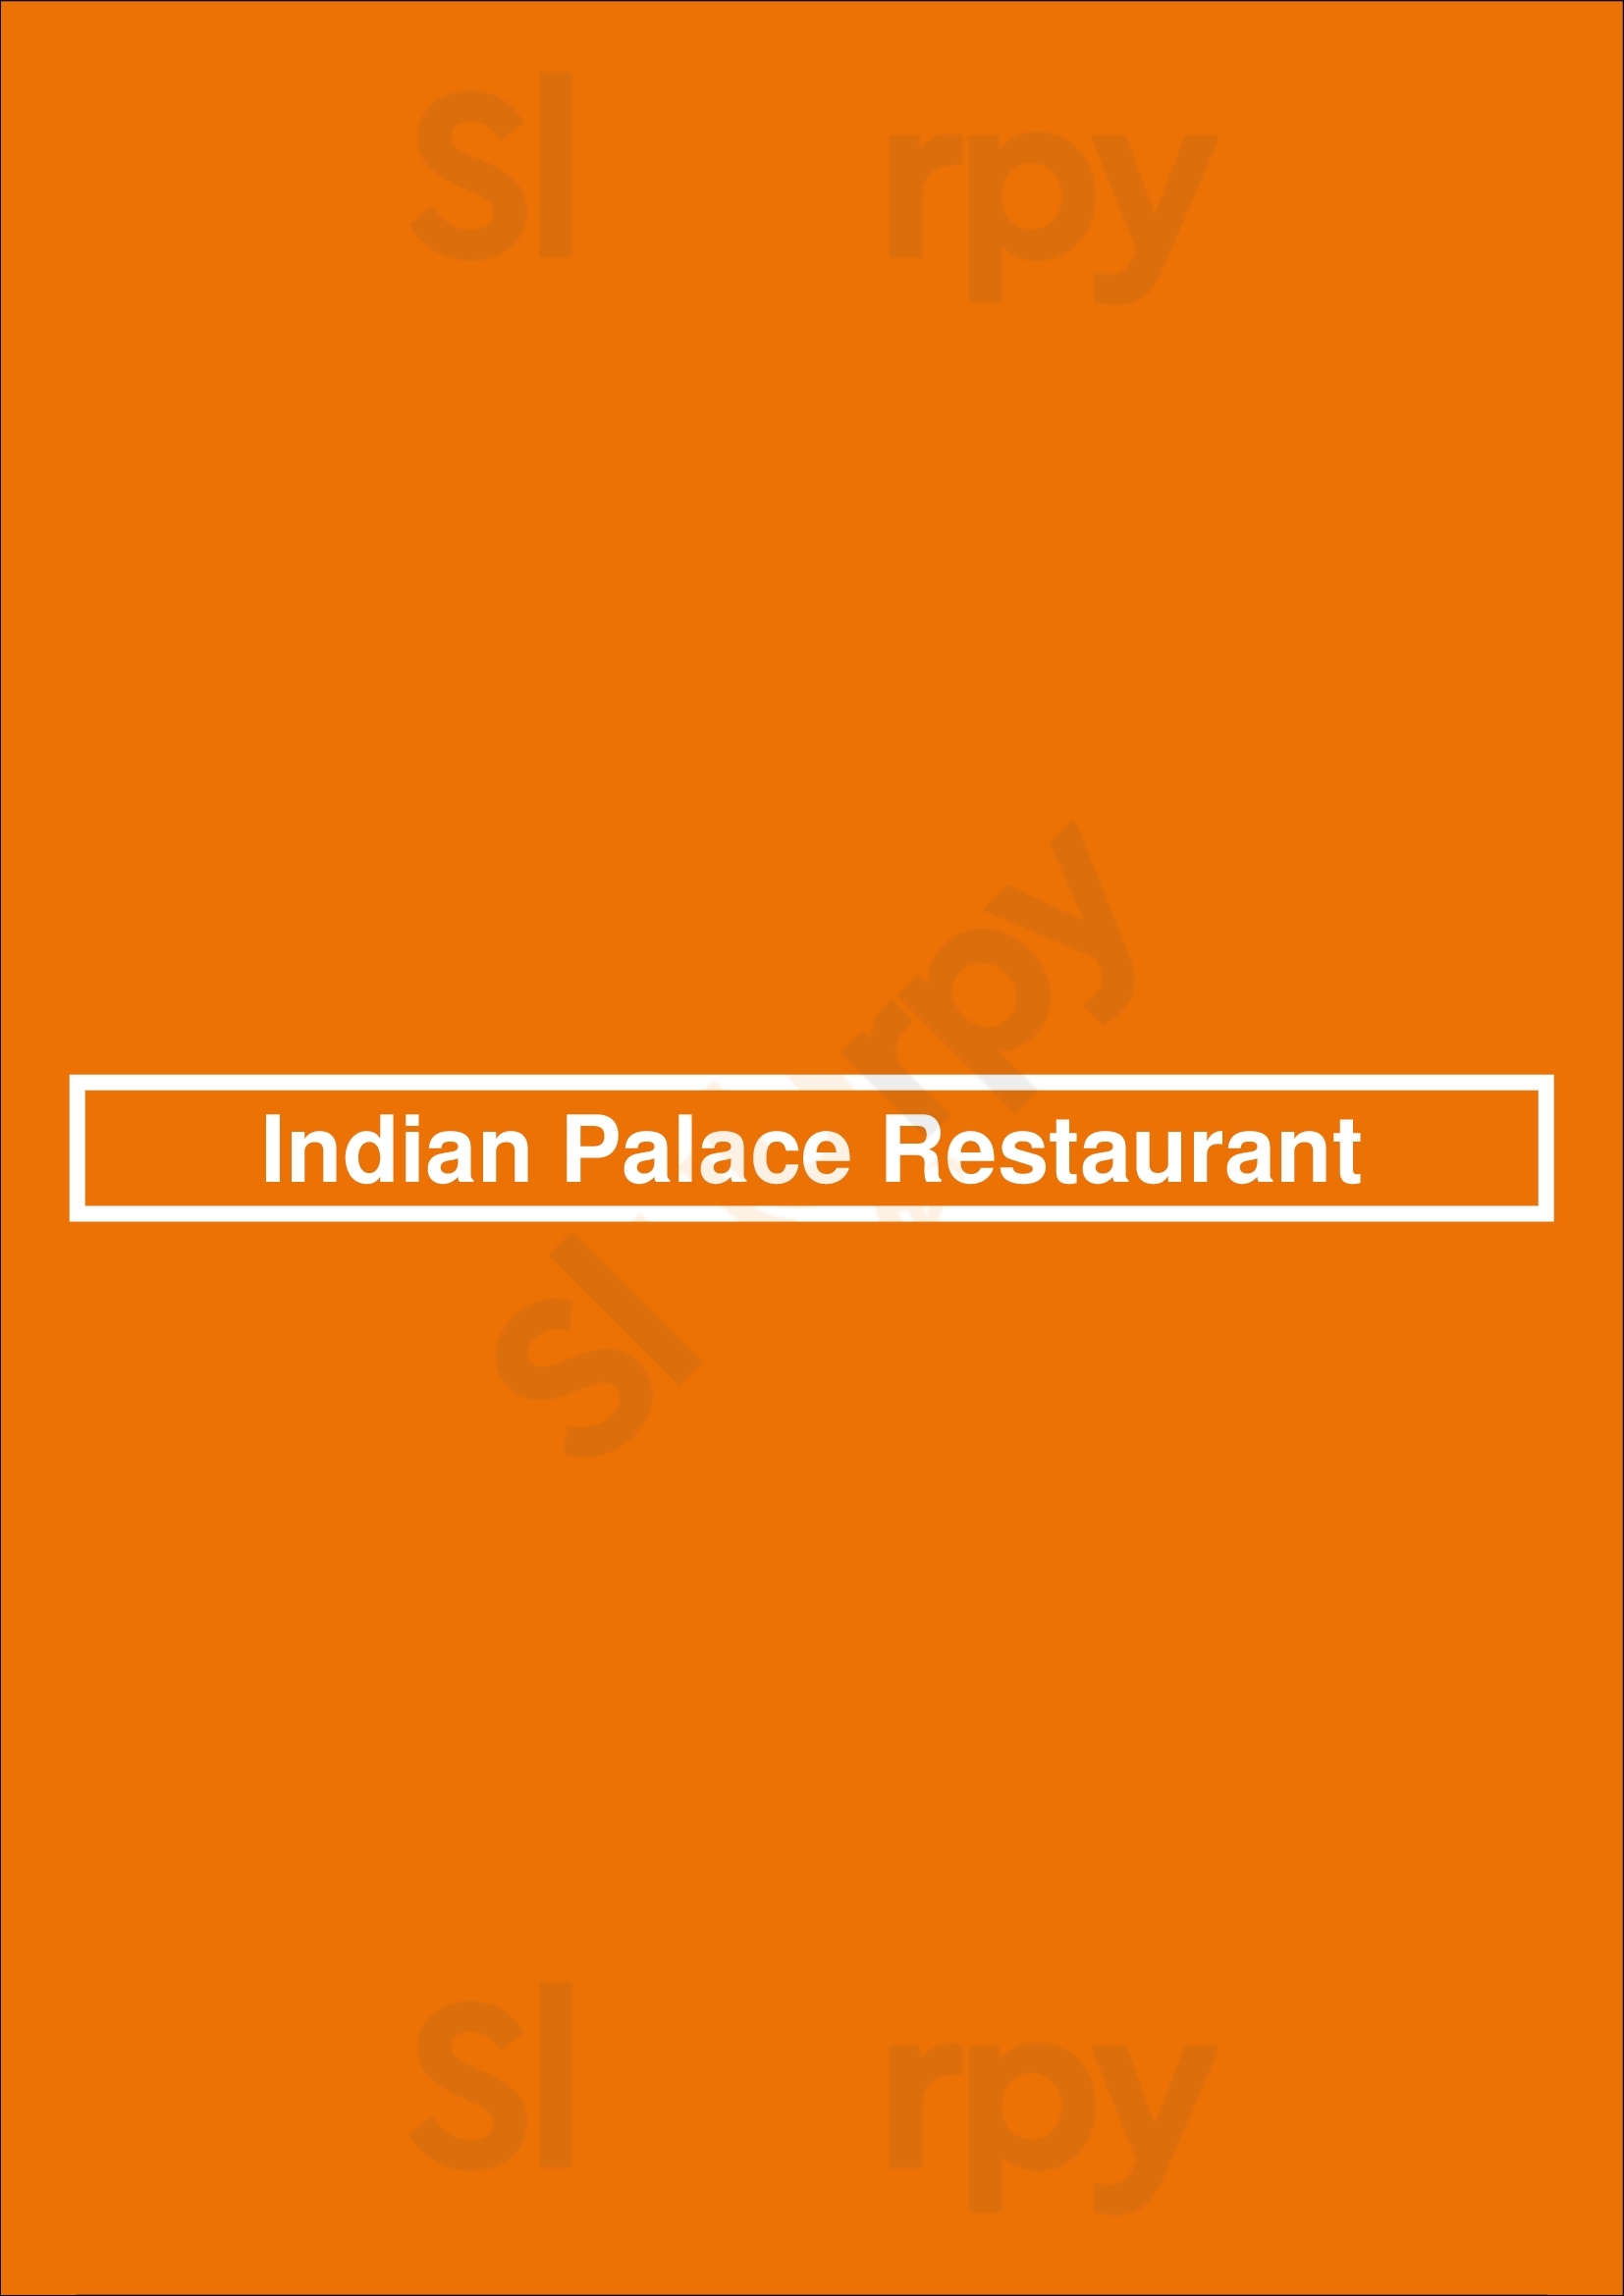 Indian Palace Restaurant Funchal Menu - 1